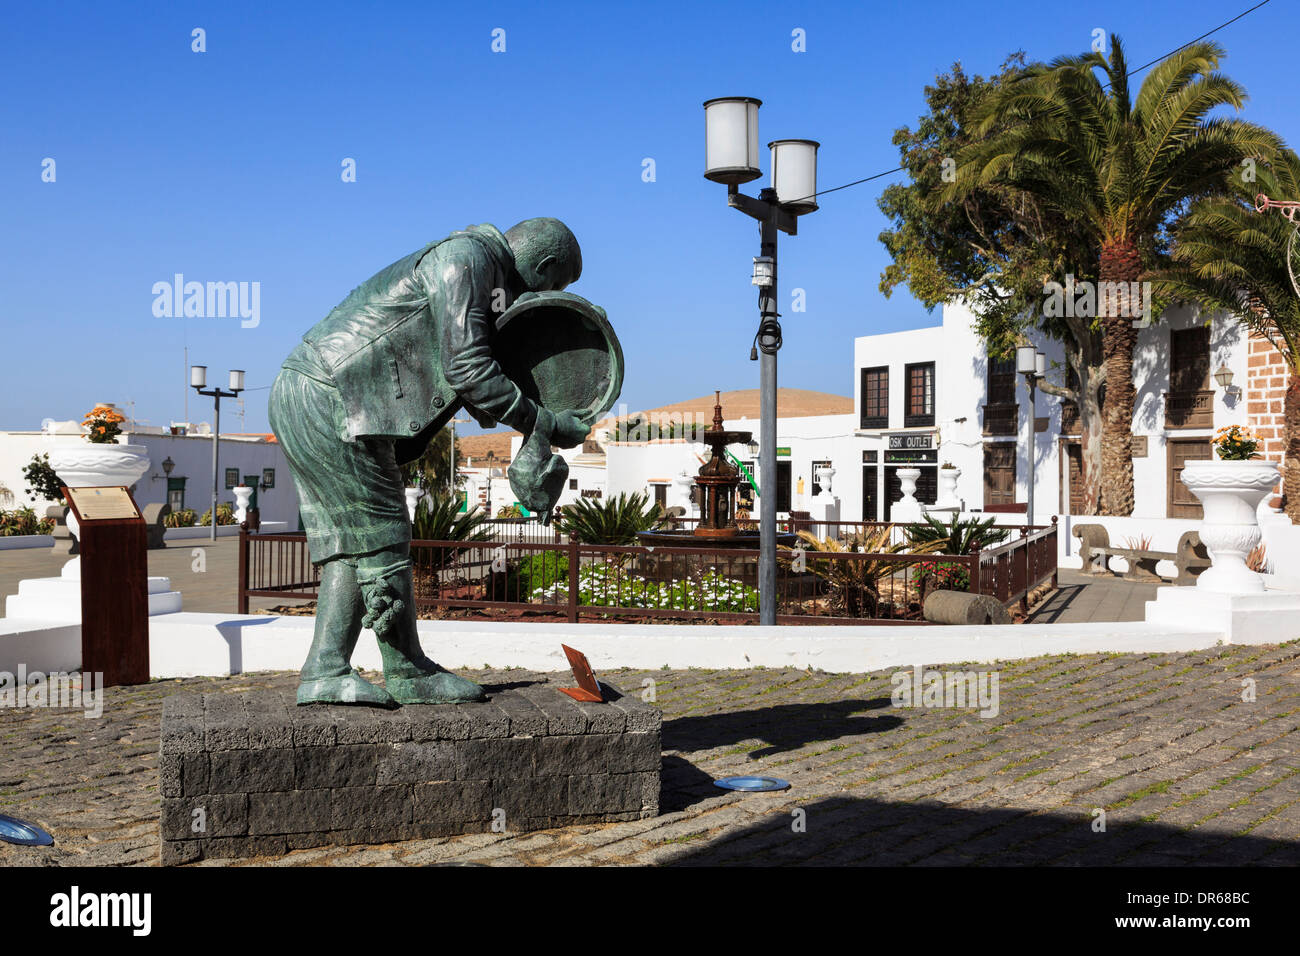 Neue Besapie-Skulptur von Rigoberto Camacho Perez Ortsgruppe Ostern Rancho de Teguise gewidmet. Lanzarote, Kanarische Inseln Stockfoto